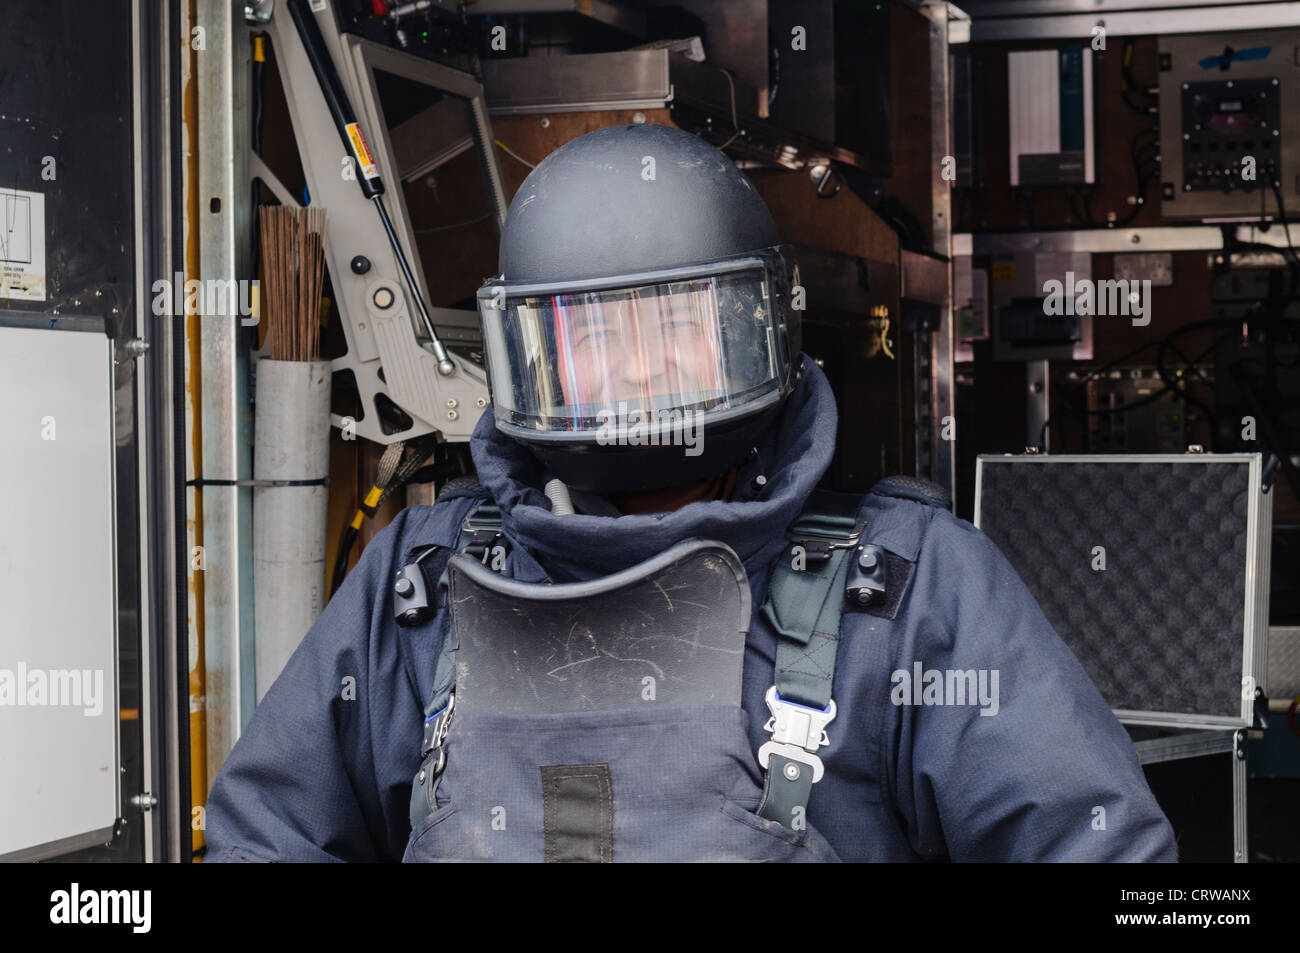 Mann, bombensicher Anzug und Helm wie von Bomb Squad ATOs verwendet. Stockfoto